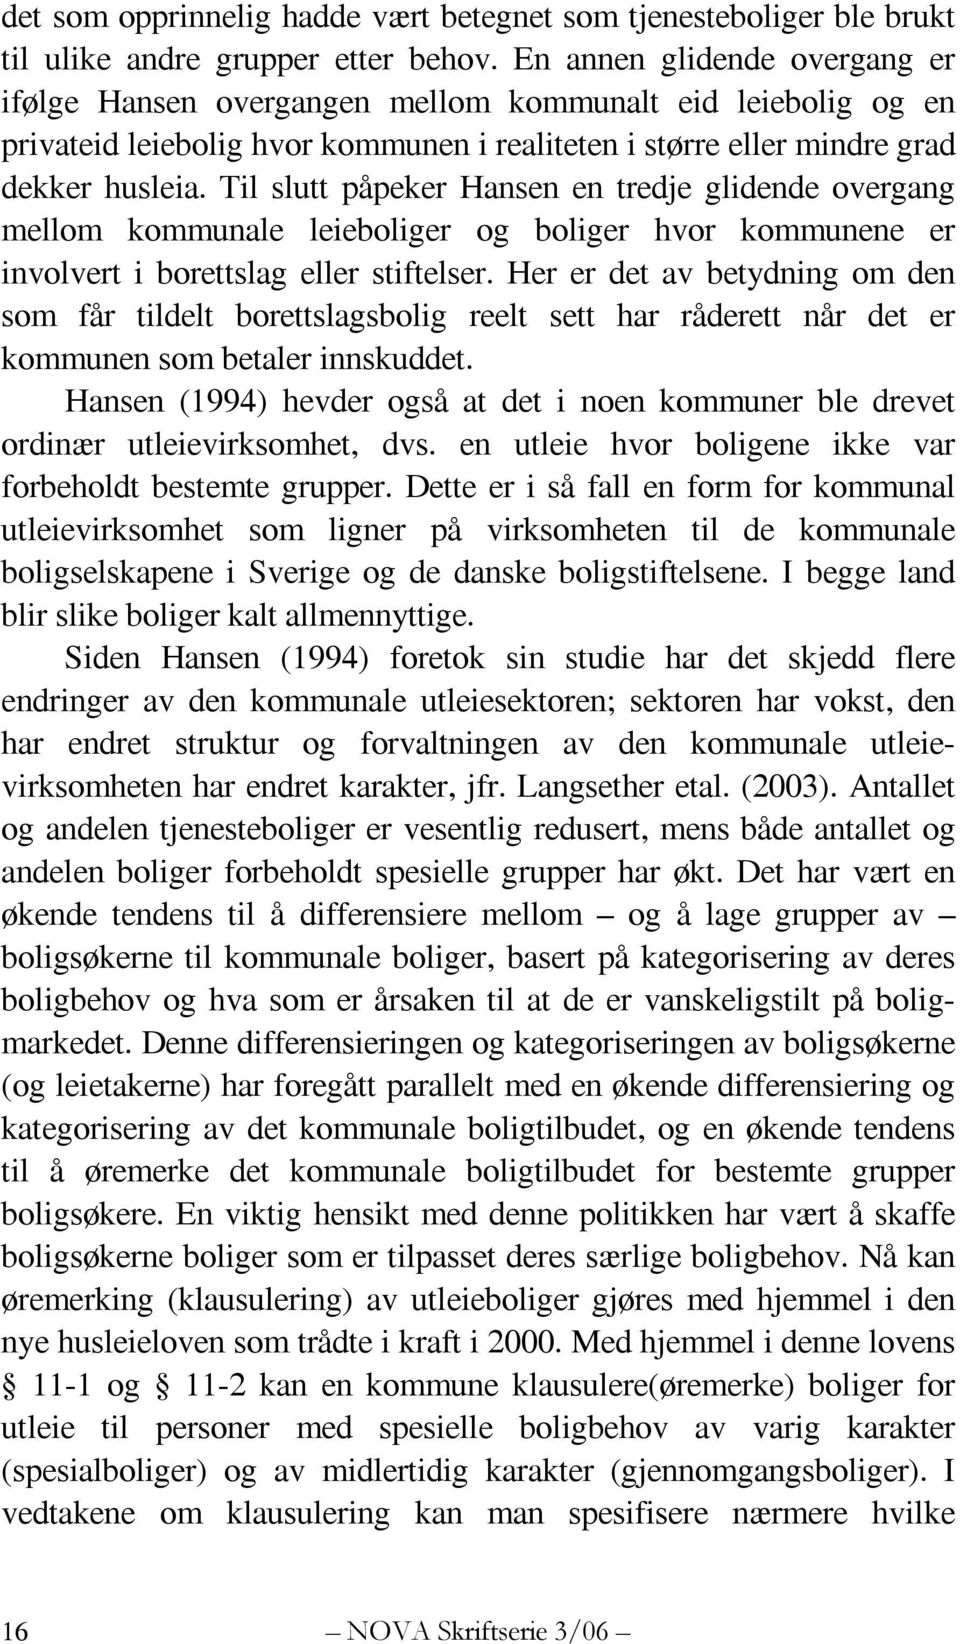 Til slutt påpeker Hansen en tredje glidende overgang mellom kommunale leieboliger og boliger hvor kommunene er involvert i borettslag eller stiftelser.